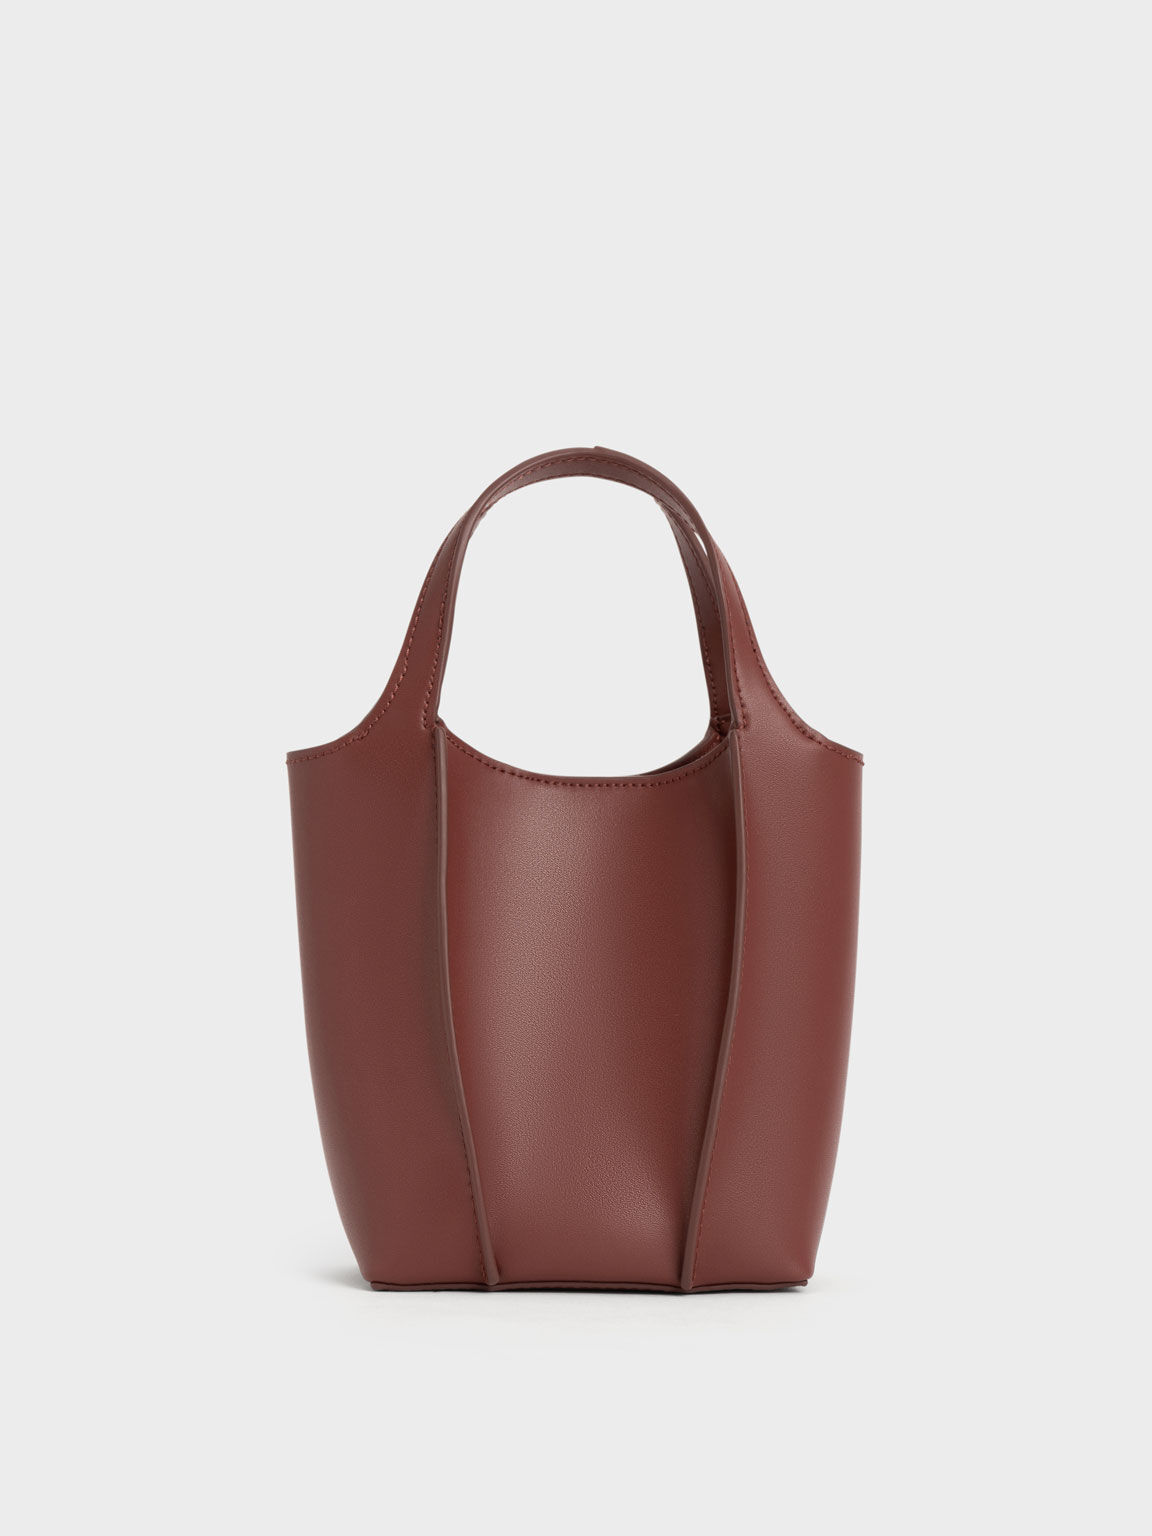 Zara Brown Sling Bag Trendy Silver - Price in India